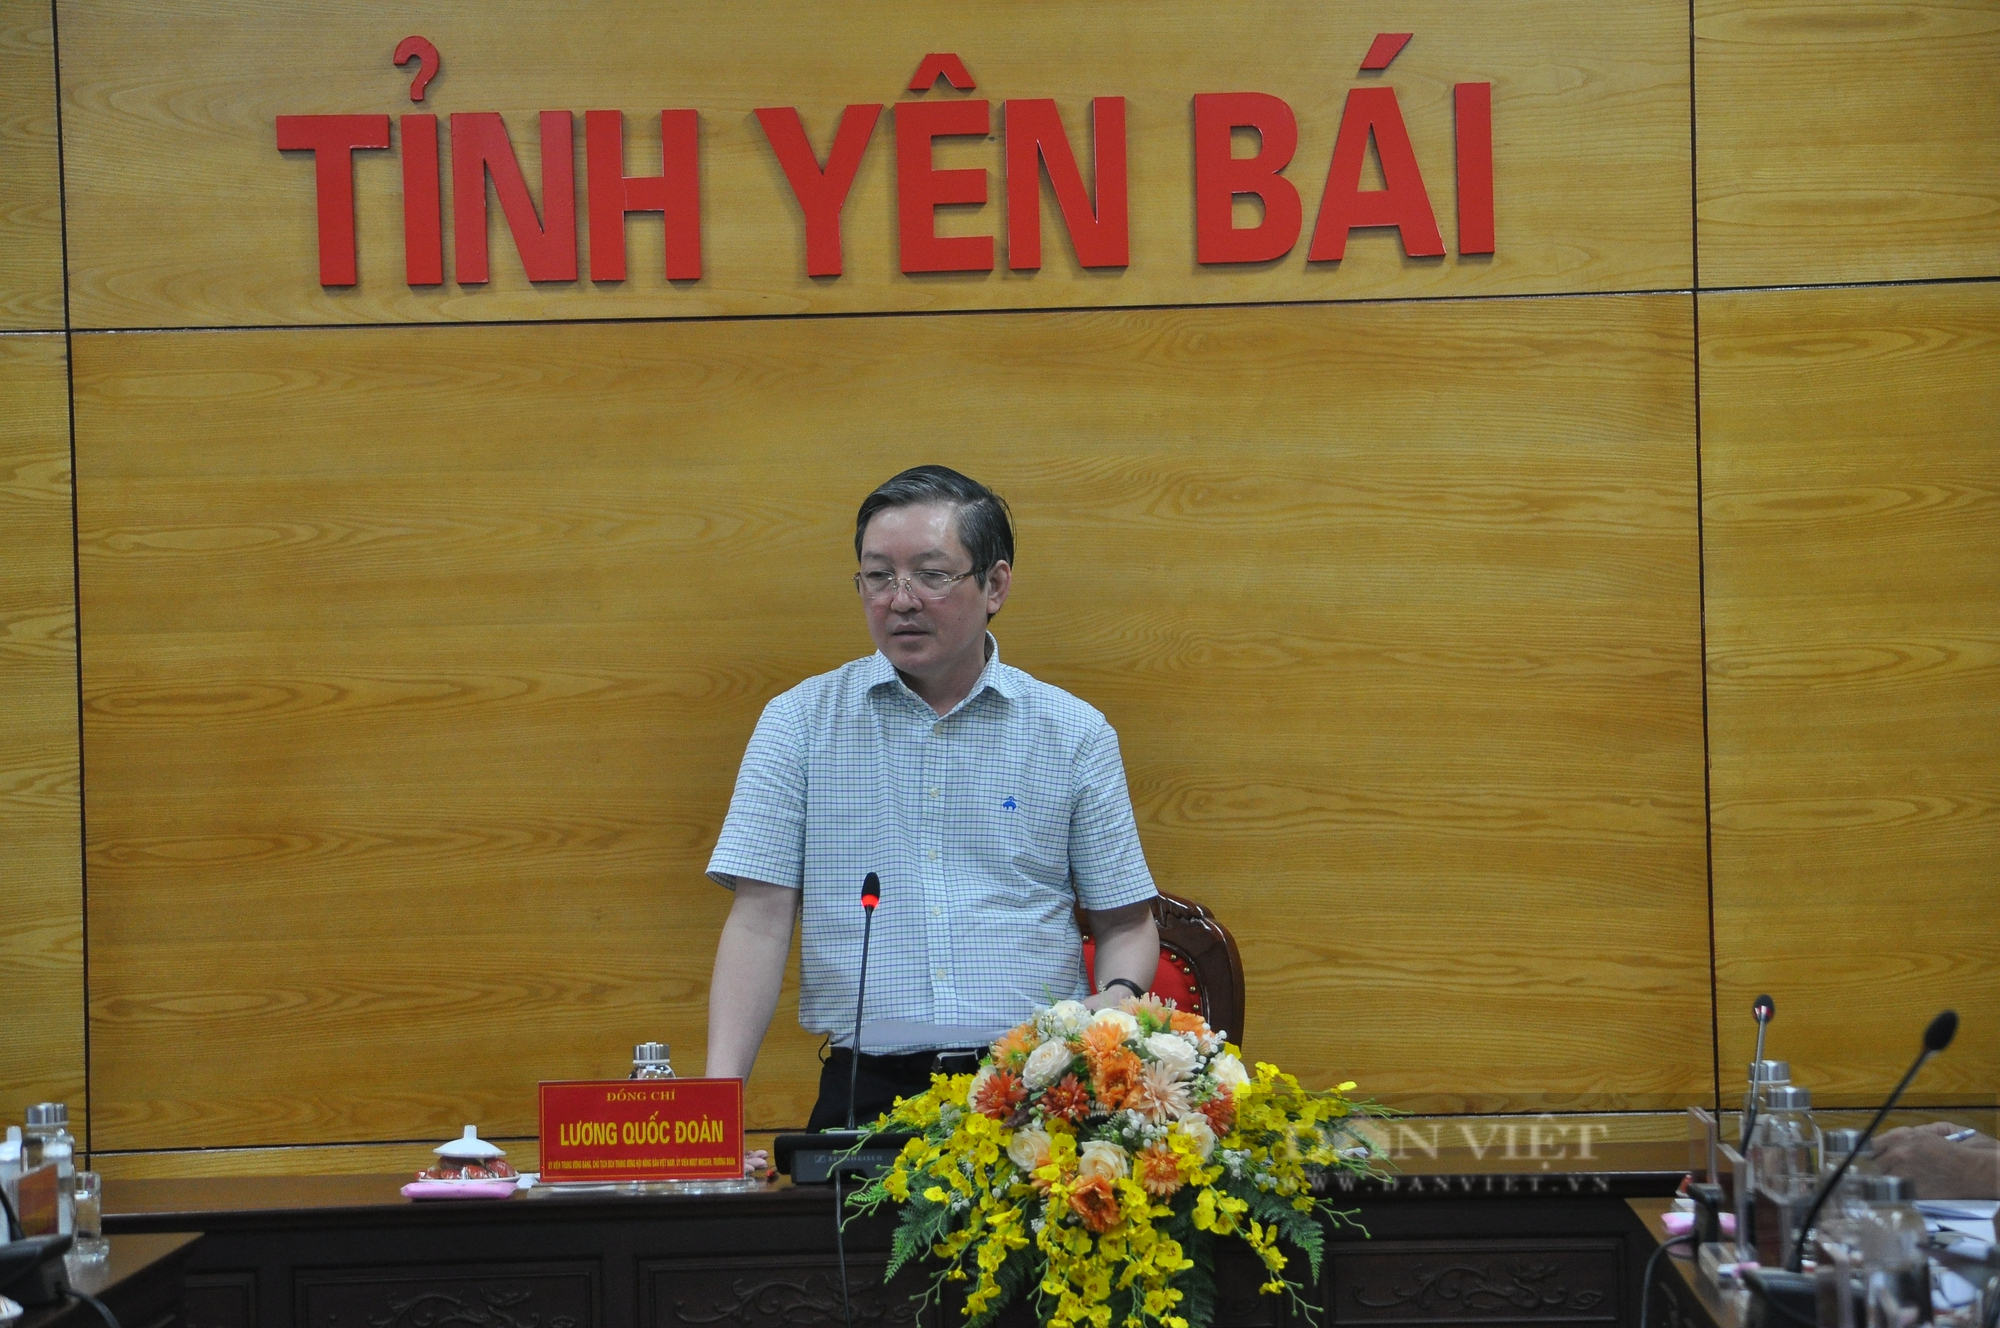 Chủ tịch Hội Nông dân Việt Nam: Tỉnh Yên Bái quan tâm bổ xung nguồn vốn cho NH CSXH  - Ảnh 4.